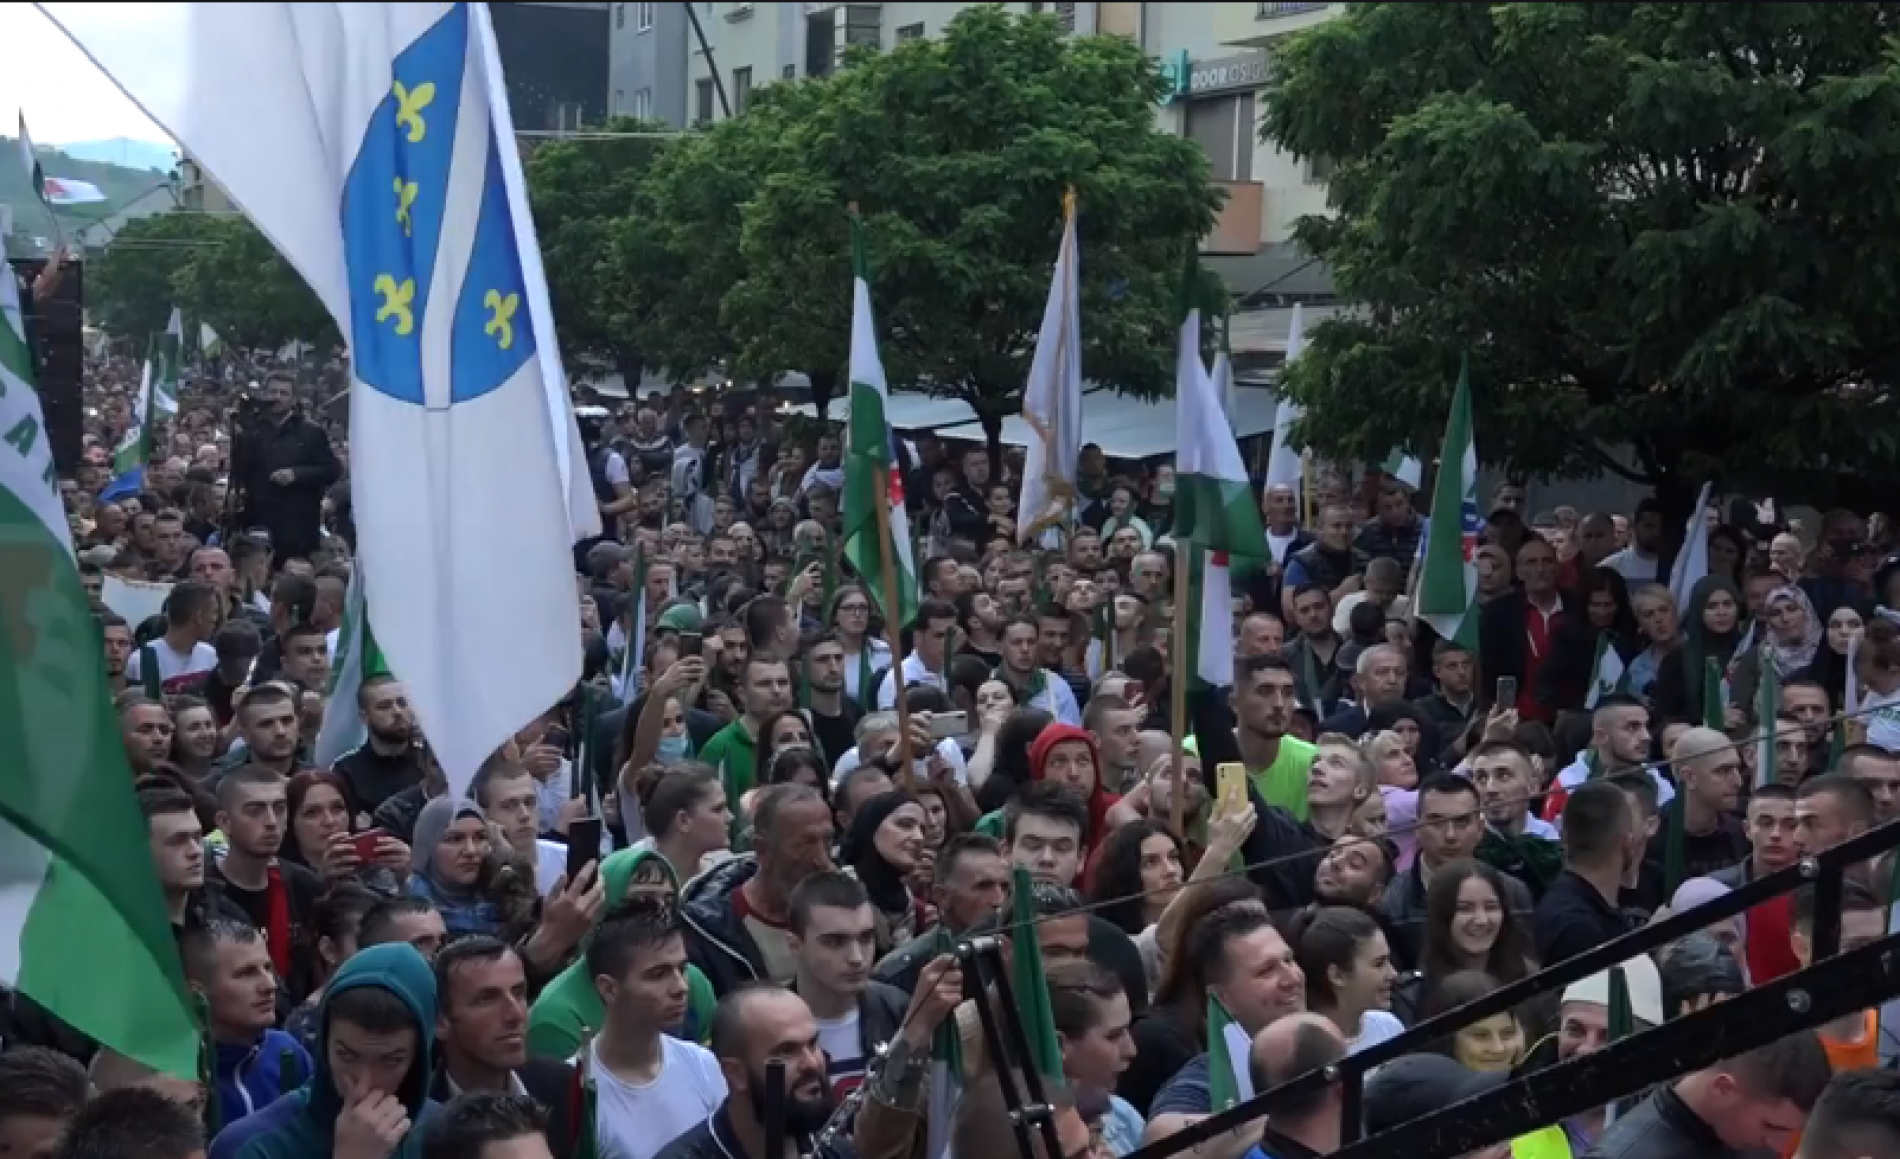 Poruka iz N. Pazara uoči izbora: Hoćemo pokrajinu Sandžak (Video)